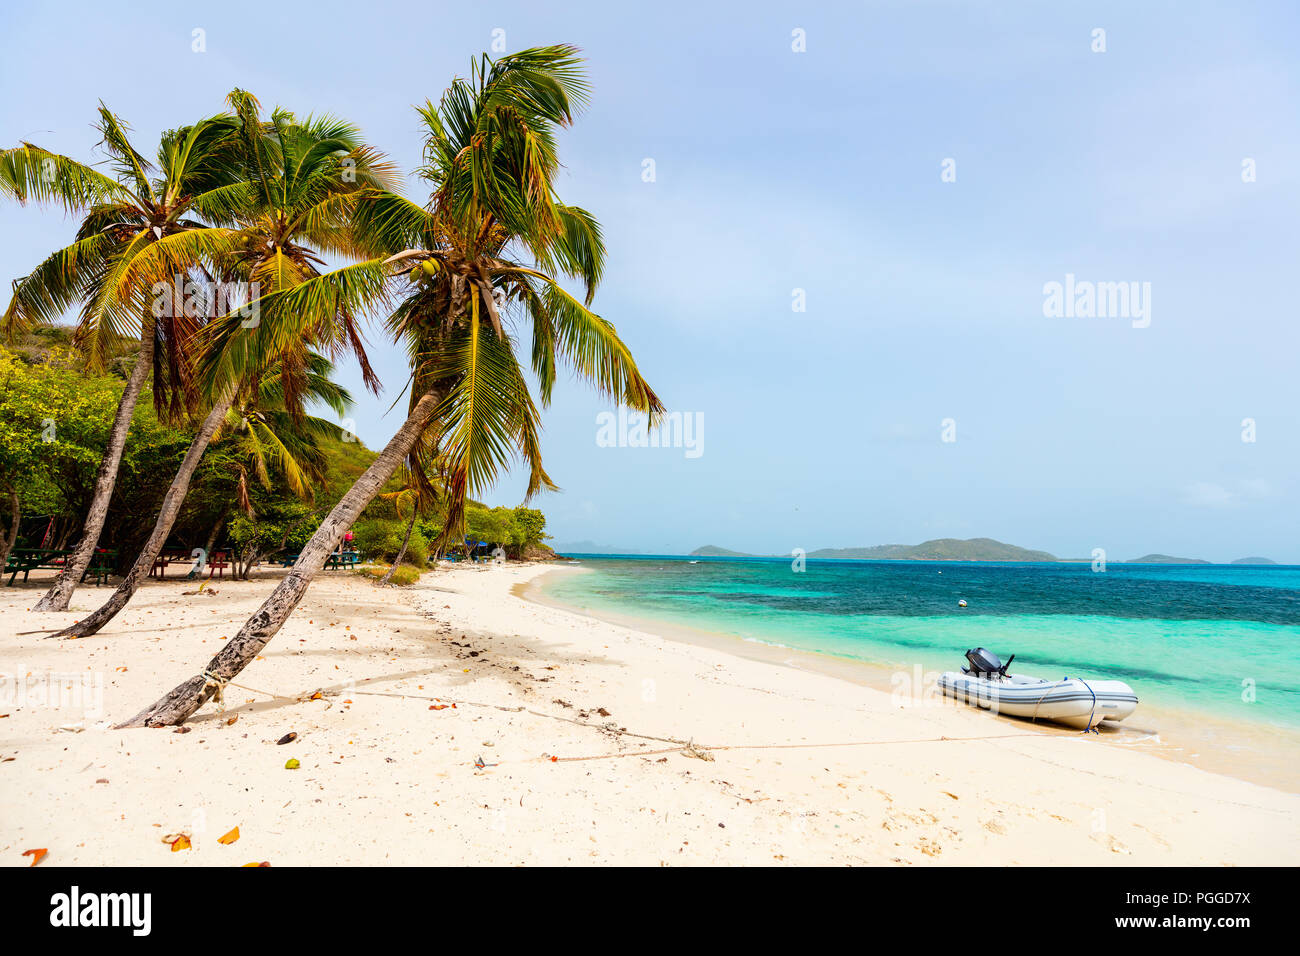 Tropical idyllique plage de sable blanc, les palmiers et la mer turquoise des Caraïbes sur l'île exotique de l'eau à Tobago Cays à St Vincent et les Grenadines Banque D'Images